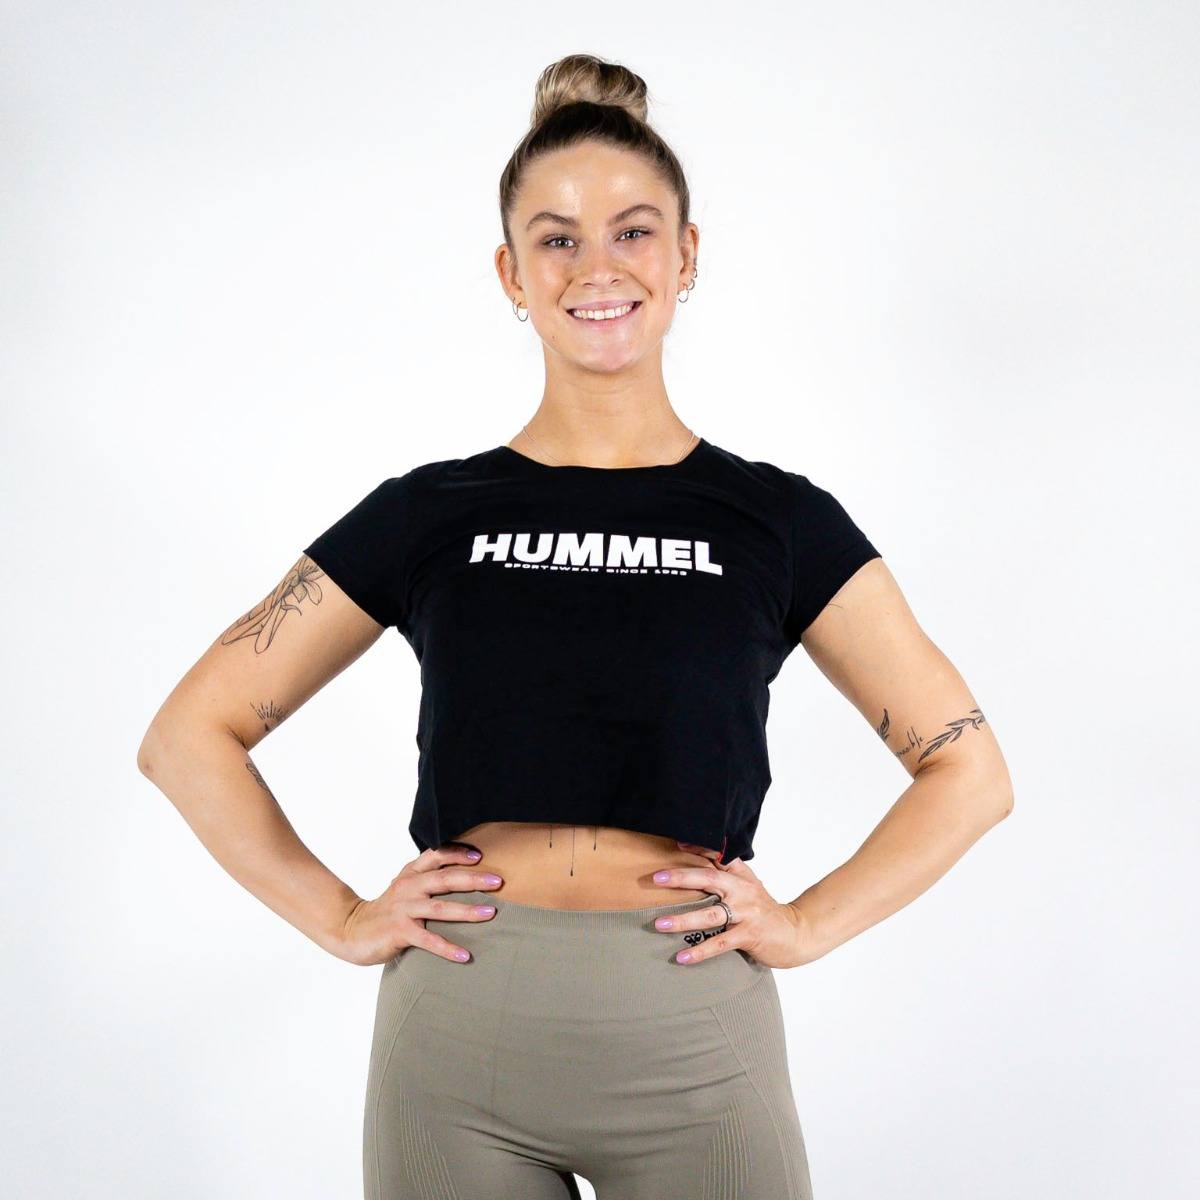 Brug Hummel LEGACY Cropped T-shirt  -  Black til en forbedret oplevelse